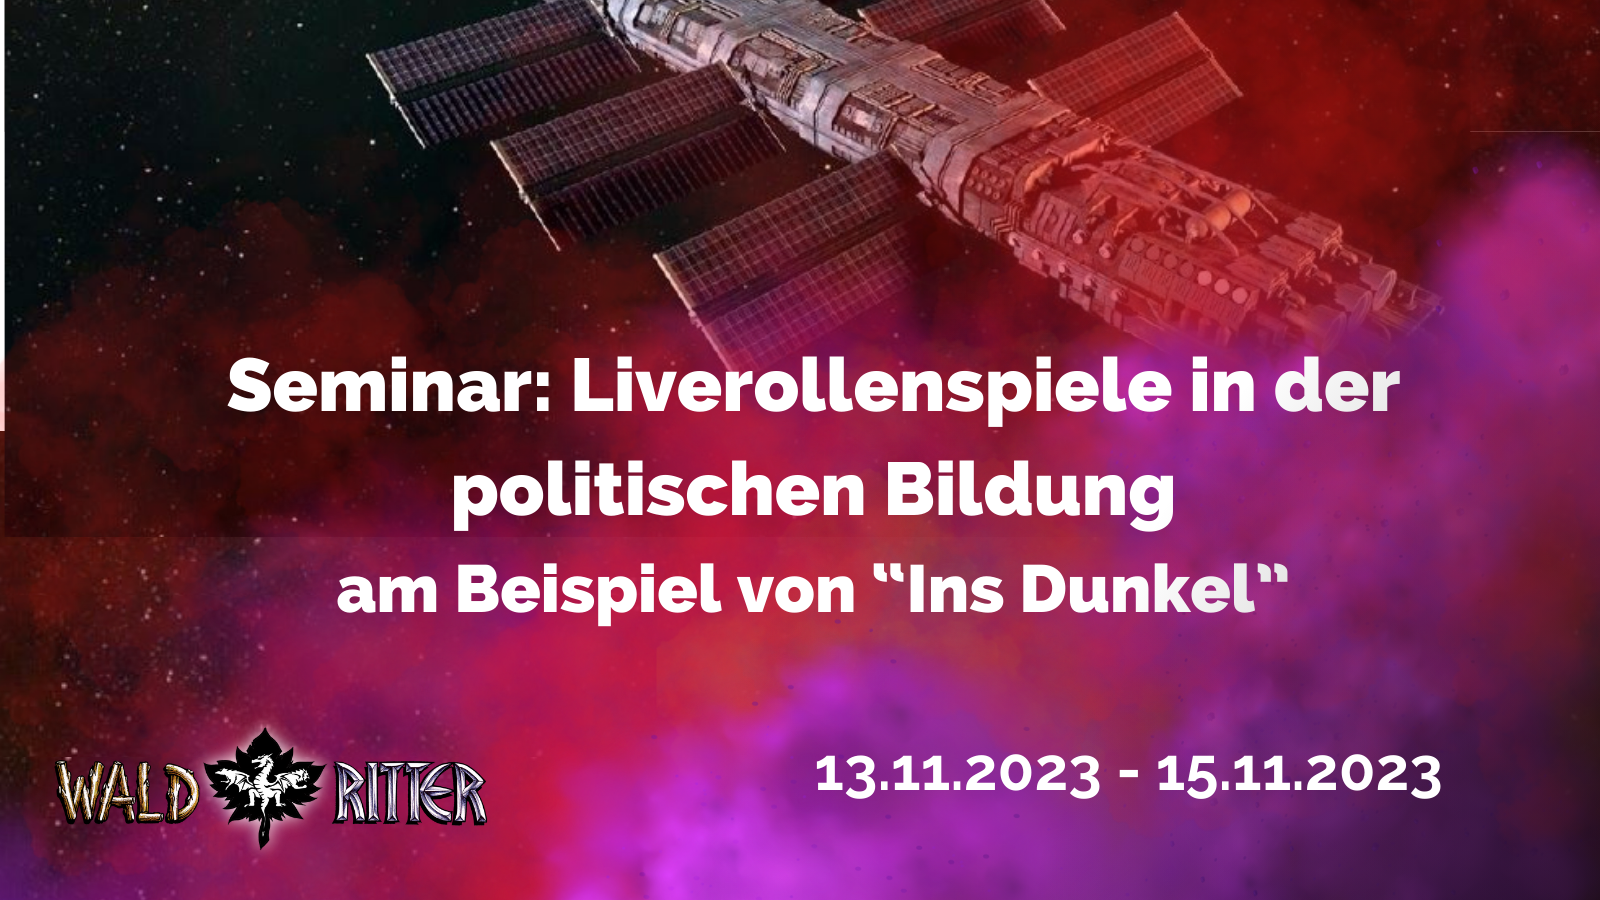 Seminar: Liverollenspiele in der politischen Bildung am Beispiel von “Ins Dunkel”